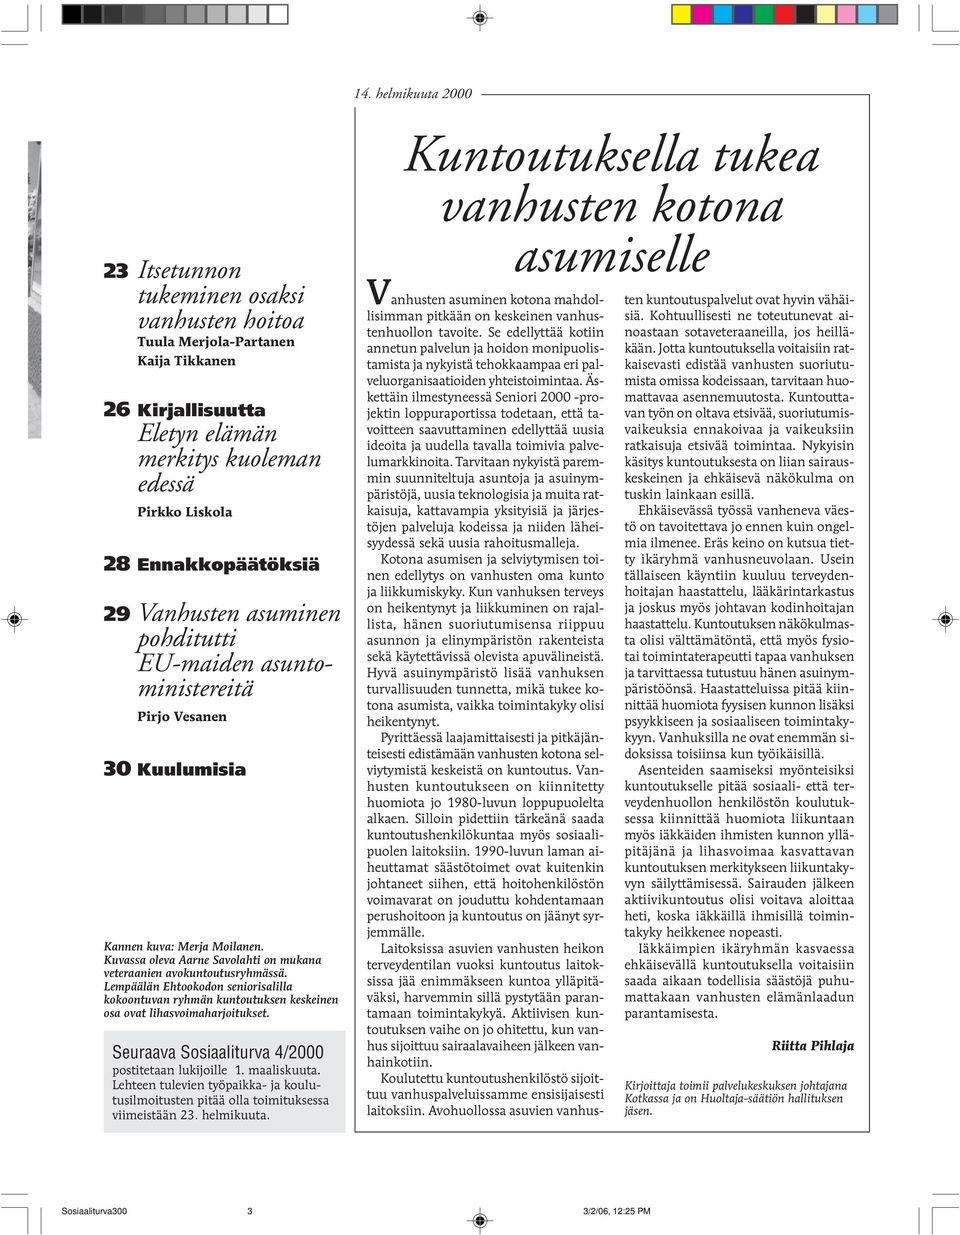 Lempäälän Ehtookodon seniorisalilla kokoontuvan ryhmän kuntoutuksen keskeinen osa ovat lihasvoimaharjoitukset. Seuraava Sosiaaliturva 4/2000 postitetaan lukijoille 1. maaliskuuta.